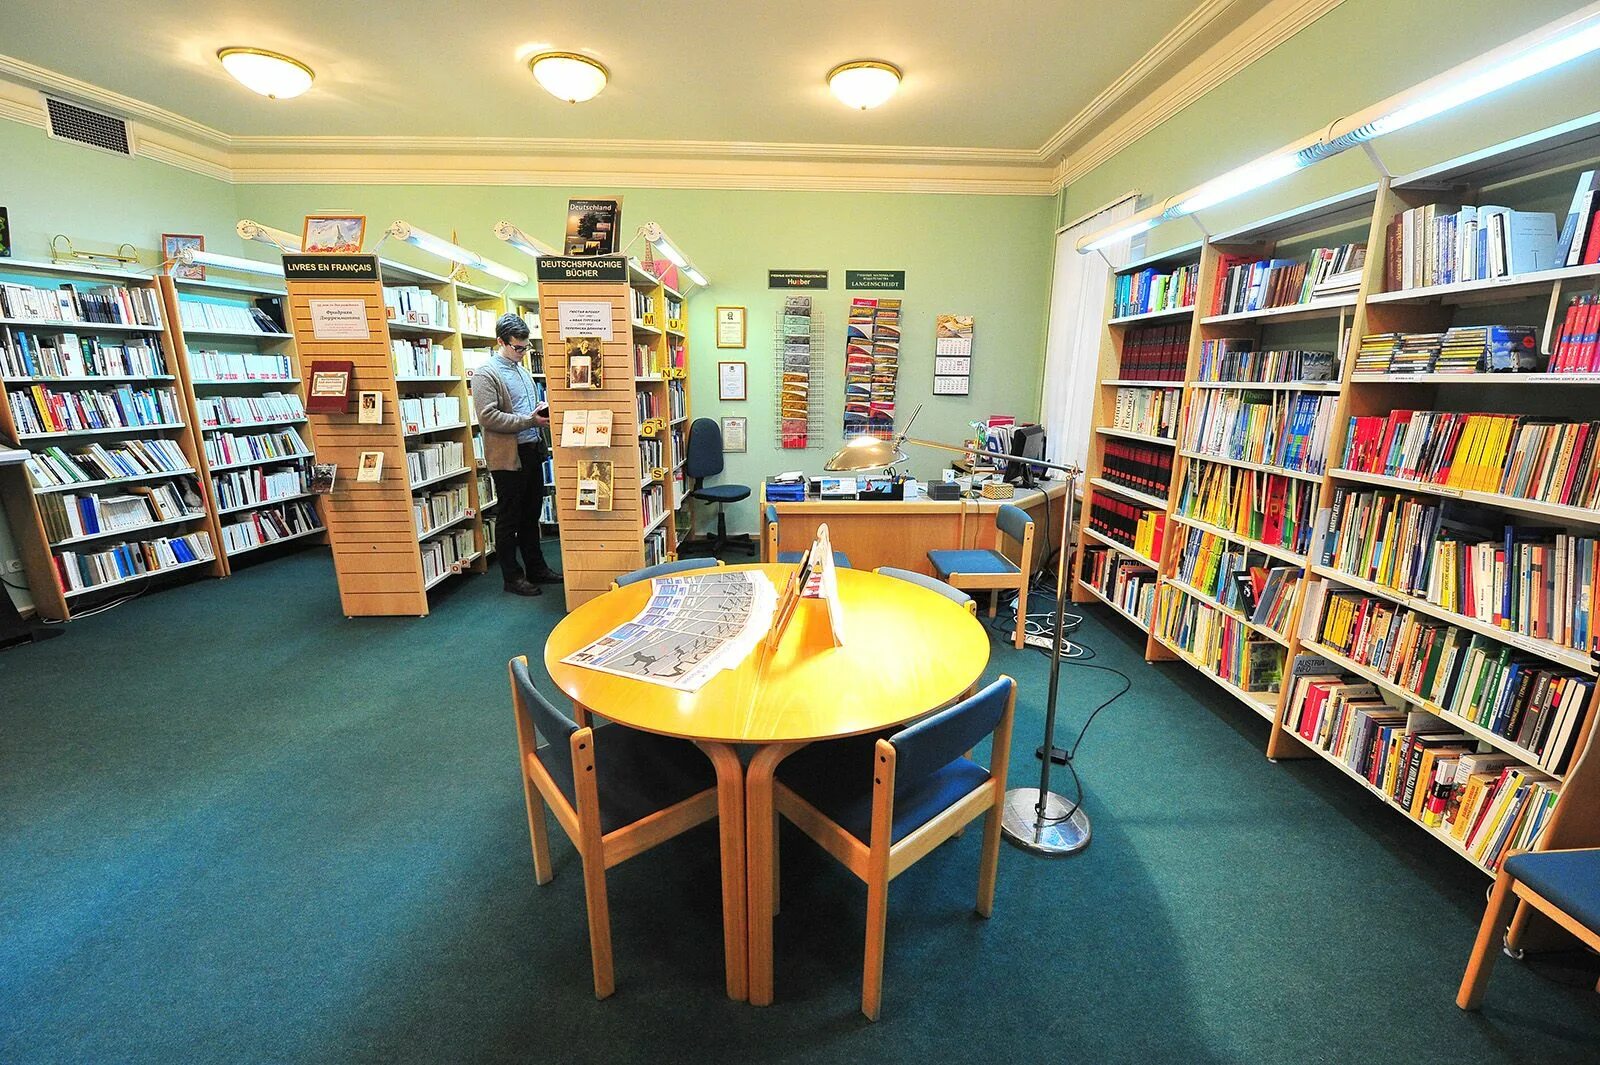 Библиотека Тушино. РГБ детская библиотека. Читальный зал в библиотеке. Современная детская библиотека.